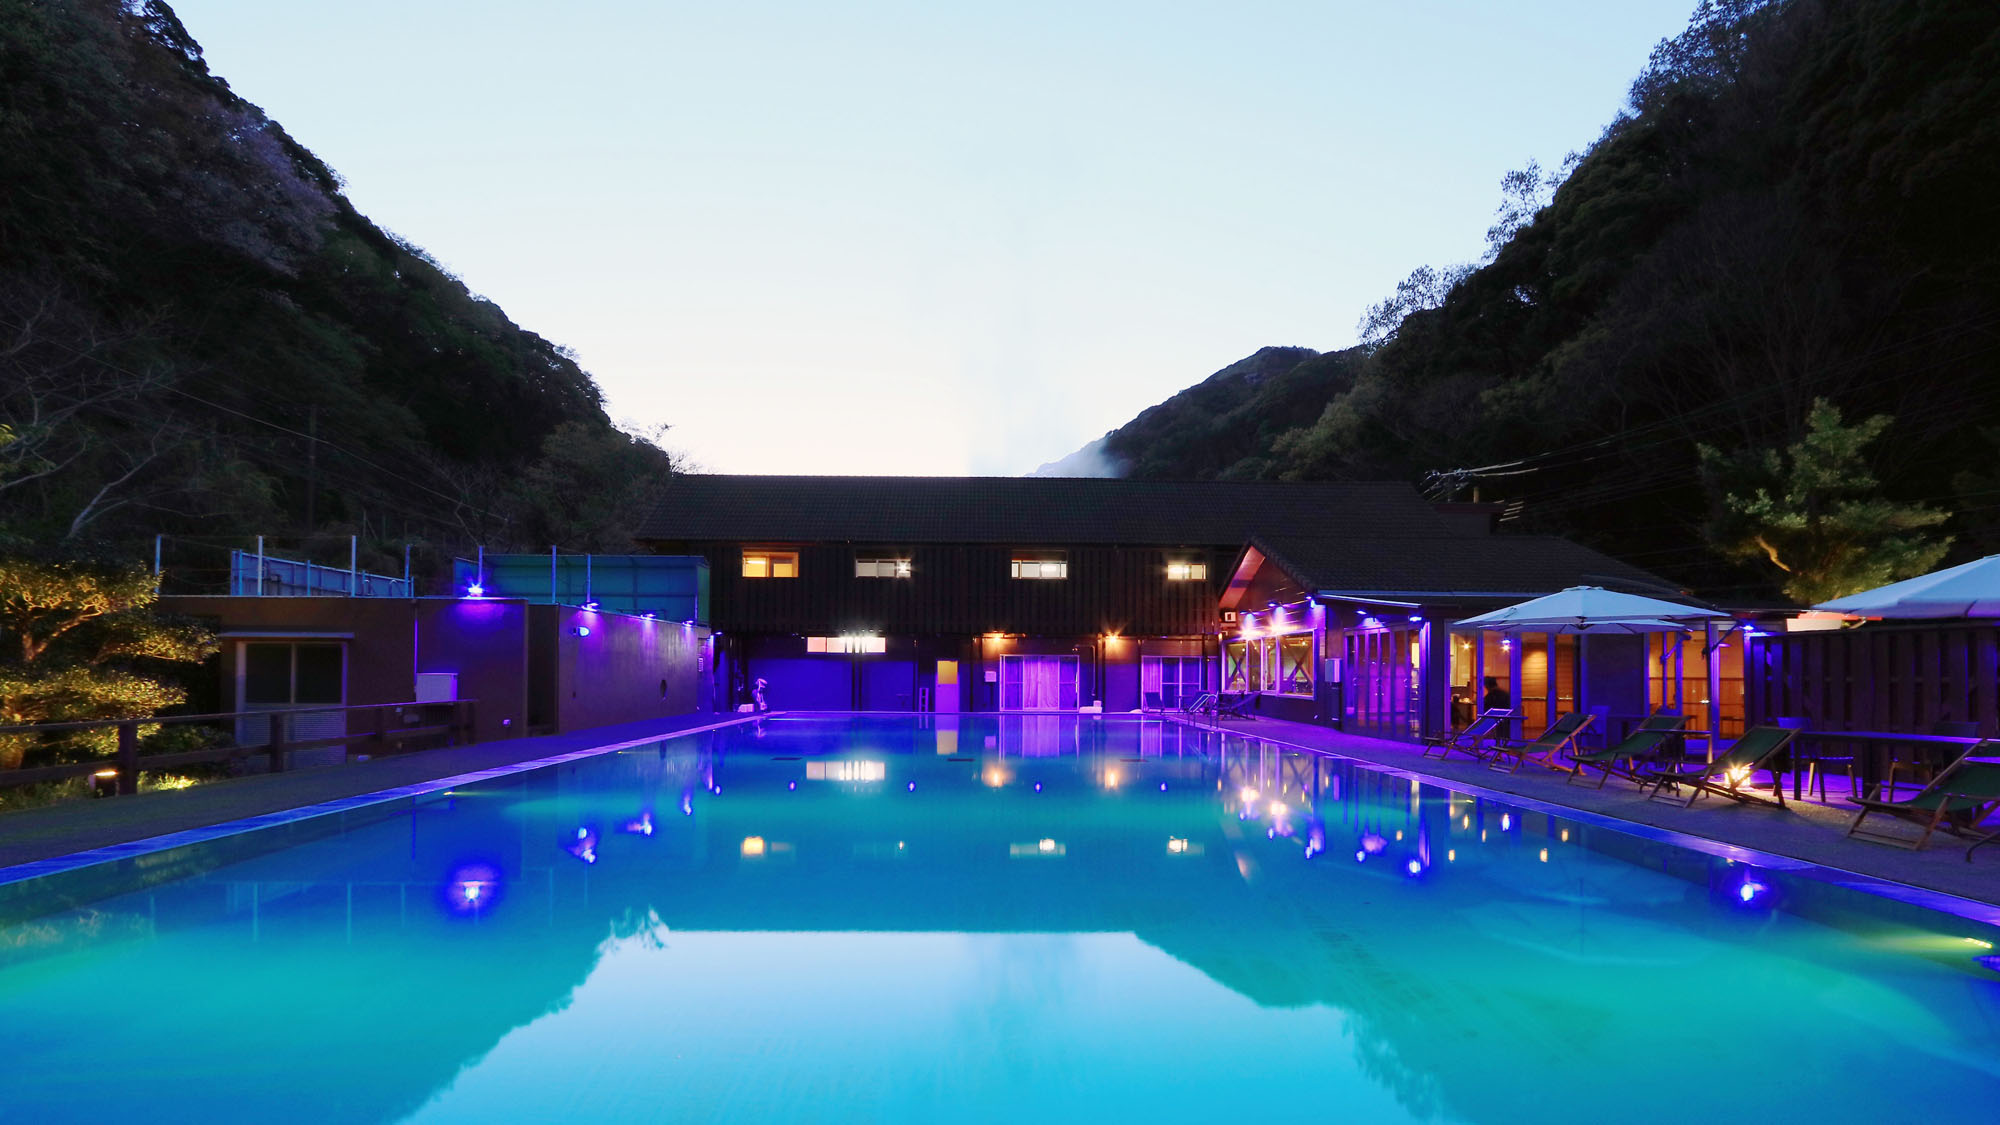 ナイトプール -Night pool-◆源泉を使用した温泉プール